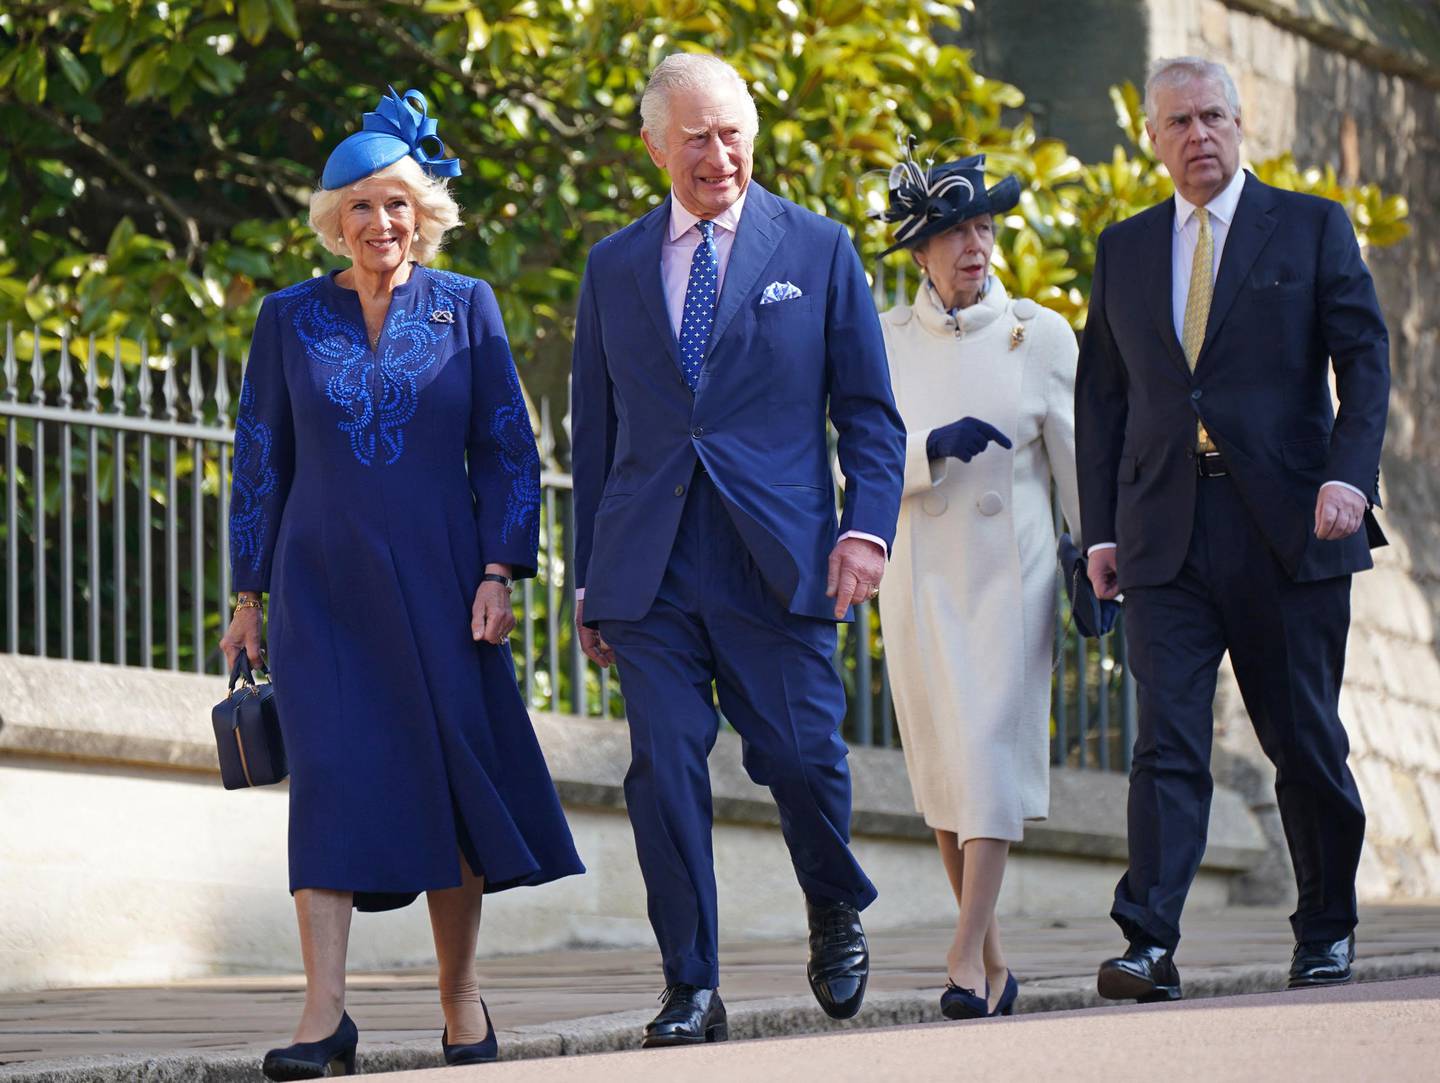 Fire kongelige går på en vei. Kongen og dronningen er kledd i blått.